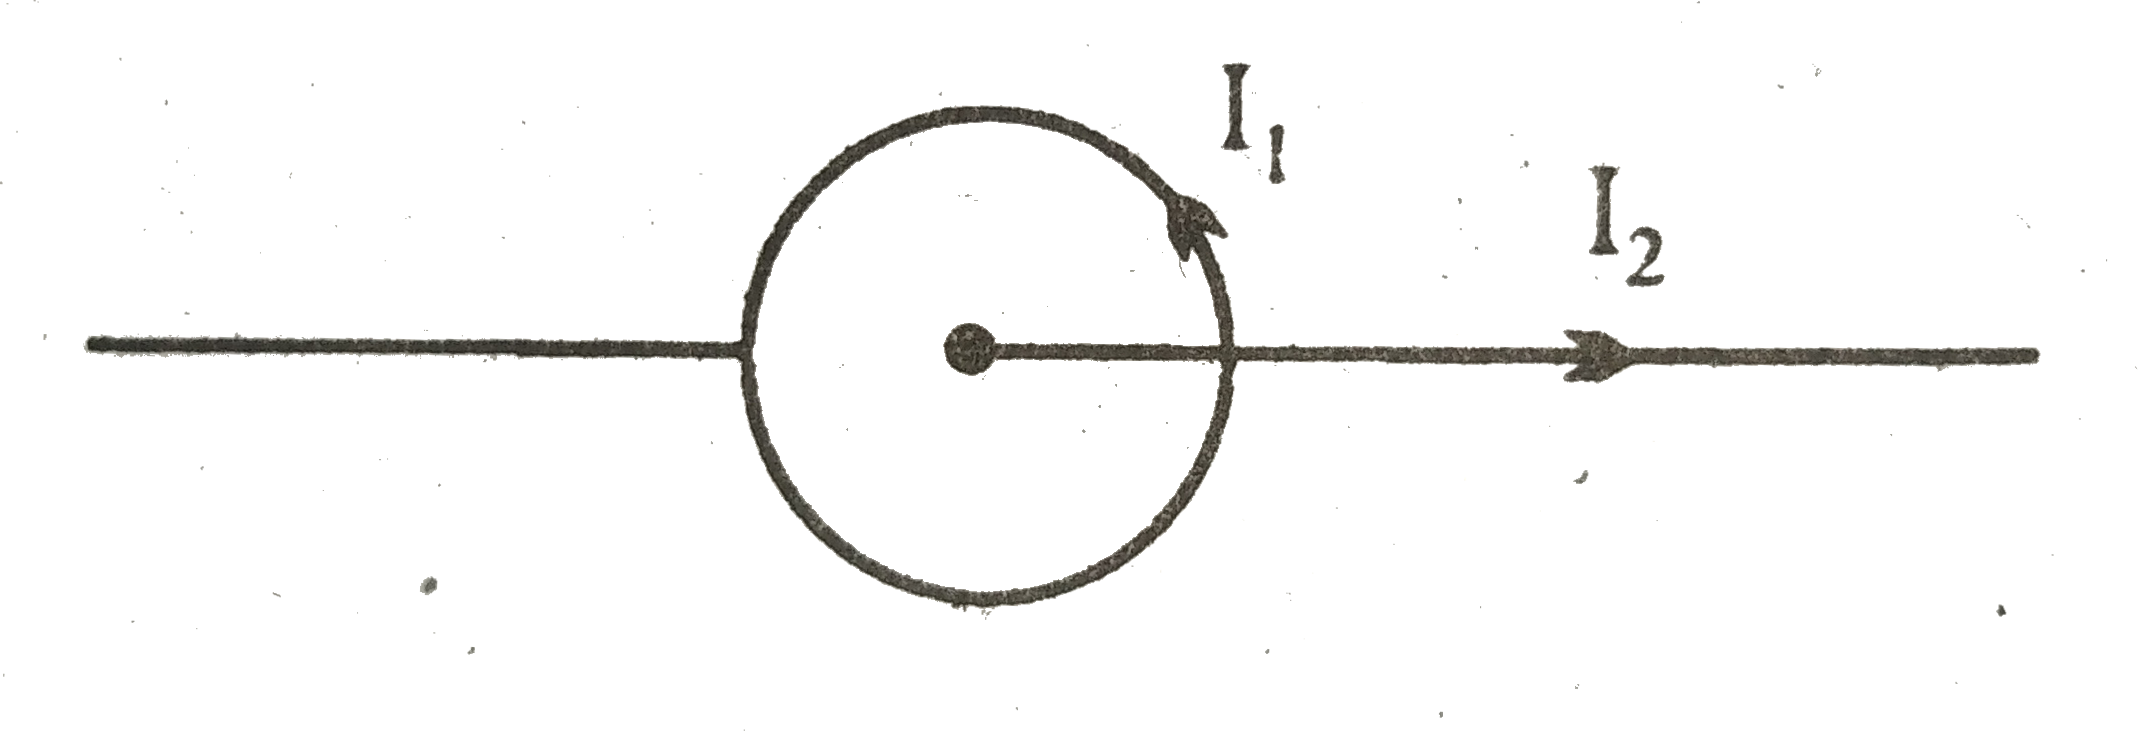 संलग्न चित्र में एक वृत्ताकार कुंडली में I1 धारा प्रवाहित हो रही है तथा उसके अक्ष पर स्थित तार में I2 धारा प्रवाहित हो रही है। दोनों धाराओं के मध्य पारस्परिक क्रिया के कारण चुंबकीय बल कितना होगा?